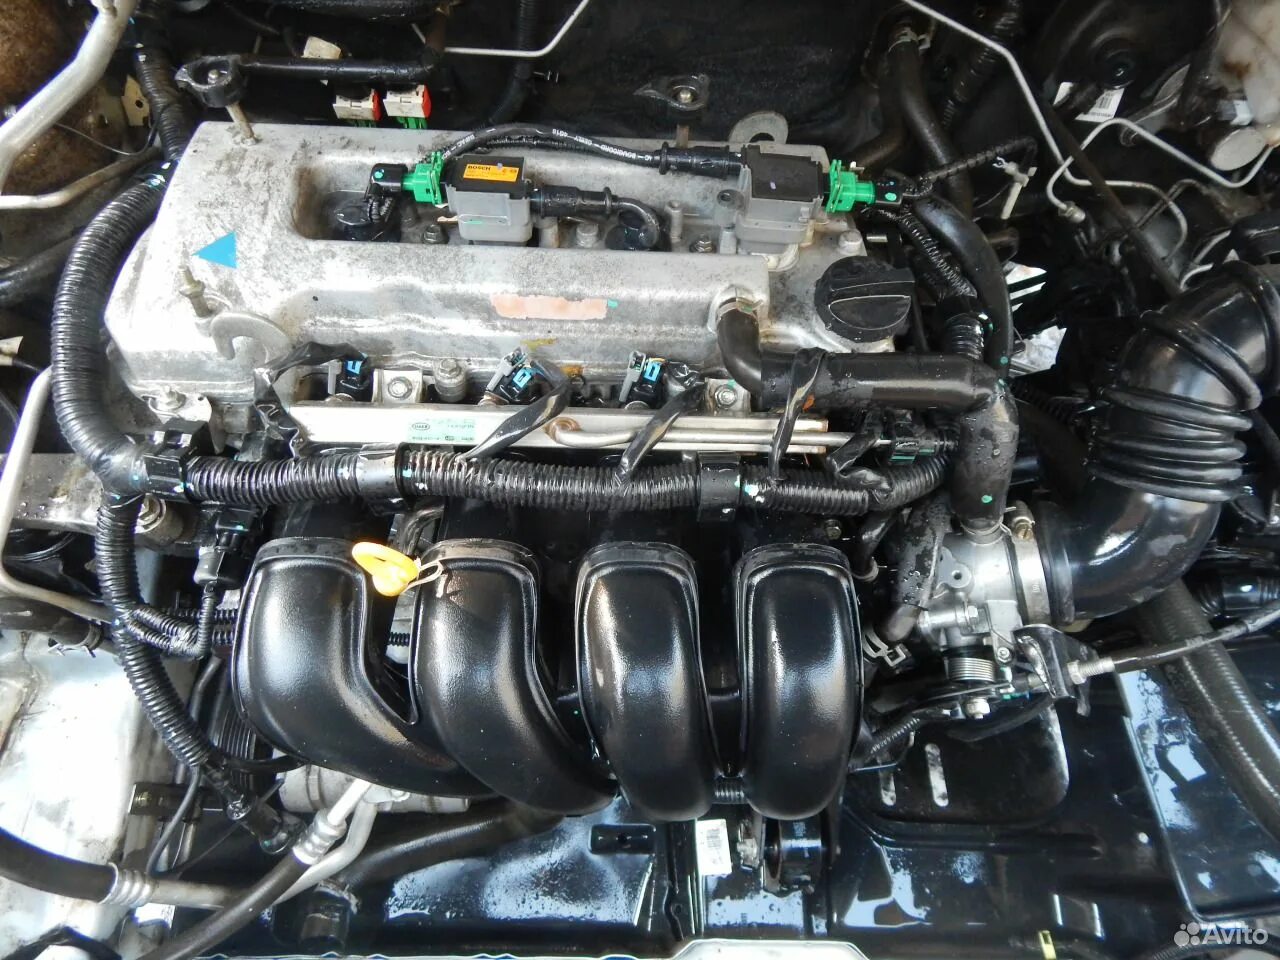 Купить двигатель на джили. Двигатель Geely Emgrand ec7 1.8. Мотор Джили Эмгранд 1.8. Jl4g18 двигатель. Geely Vision 1.8 мотор.